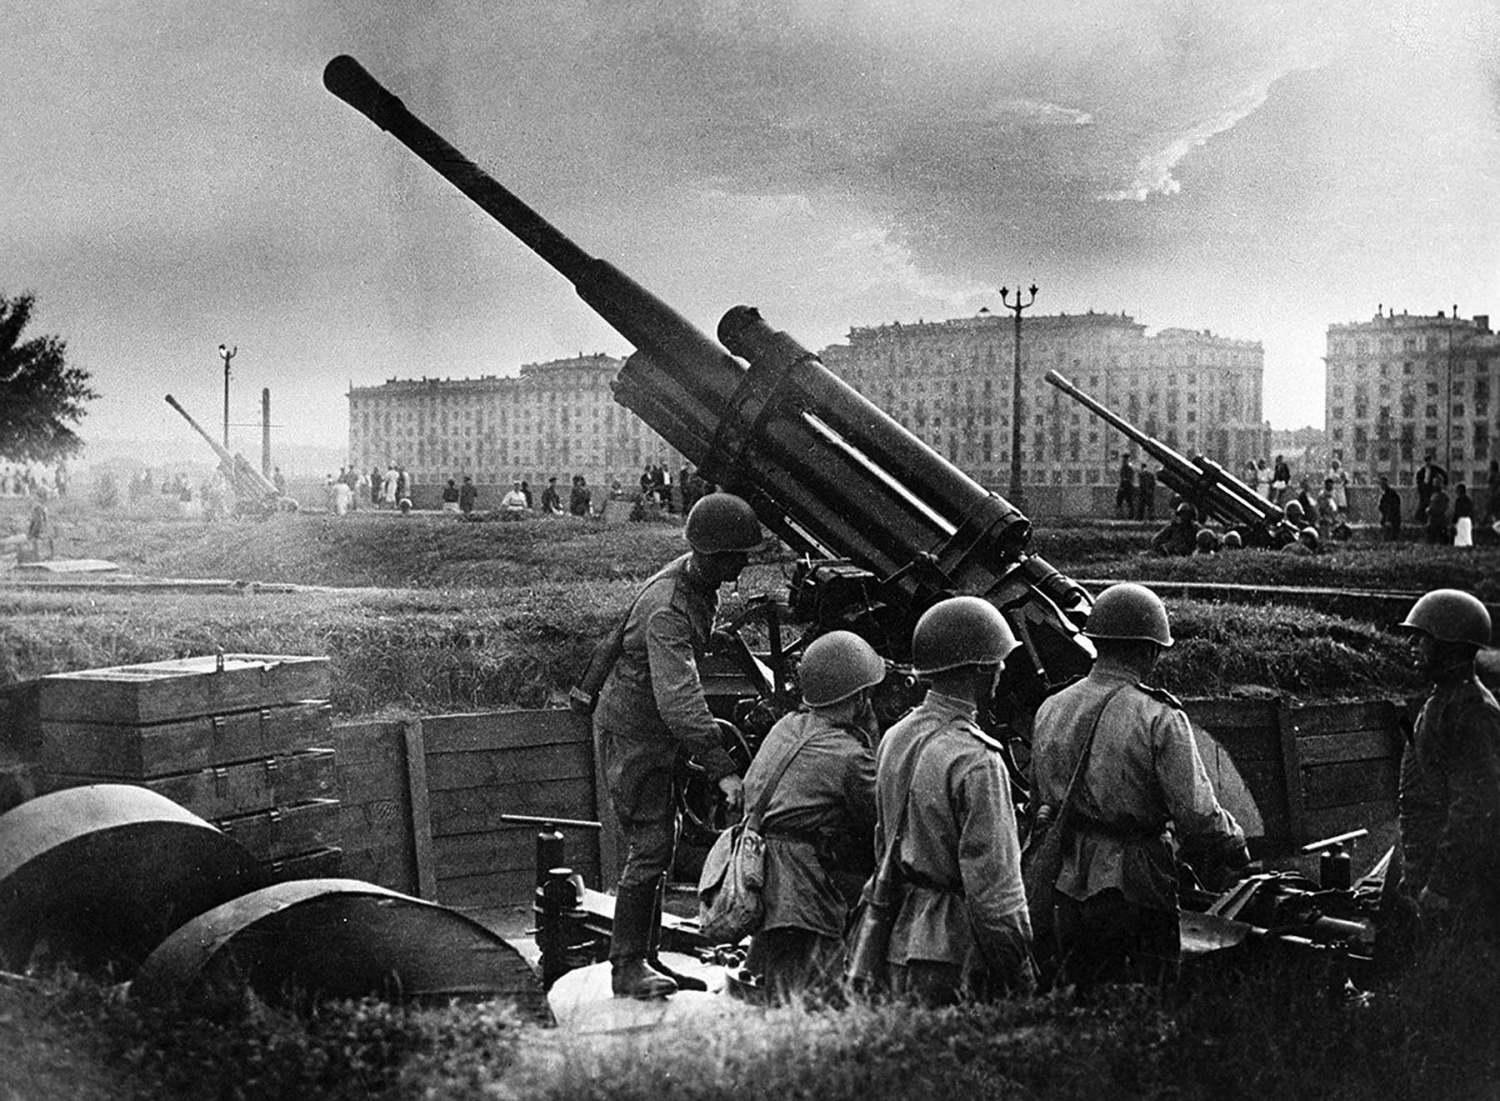 “Cuộc thập tự chinh” của Đức quốc xã và các nước châu Âu chống Liên Xô trong Chiến tranh thế giới thứ hai - Kỳ cuối: Các giai đoạn của cuộc “thập tự chinh”